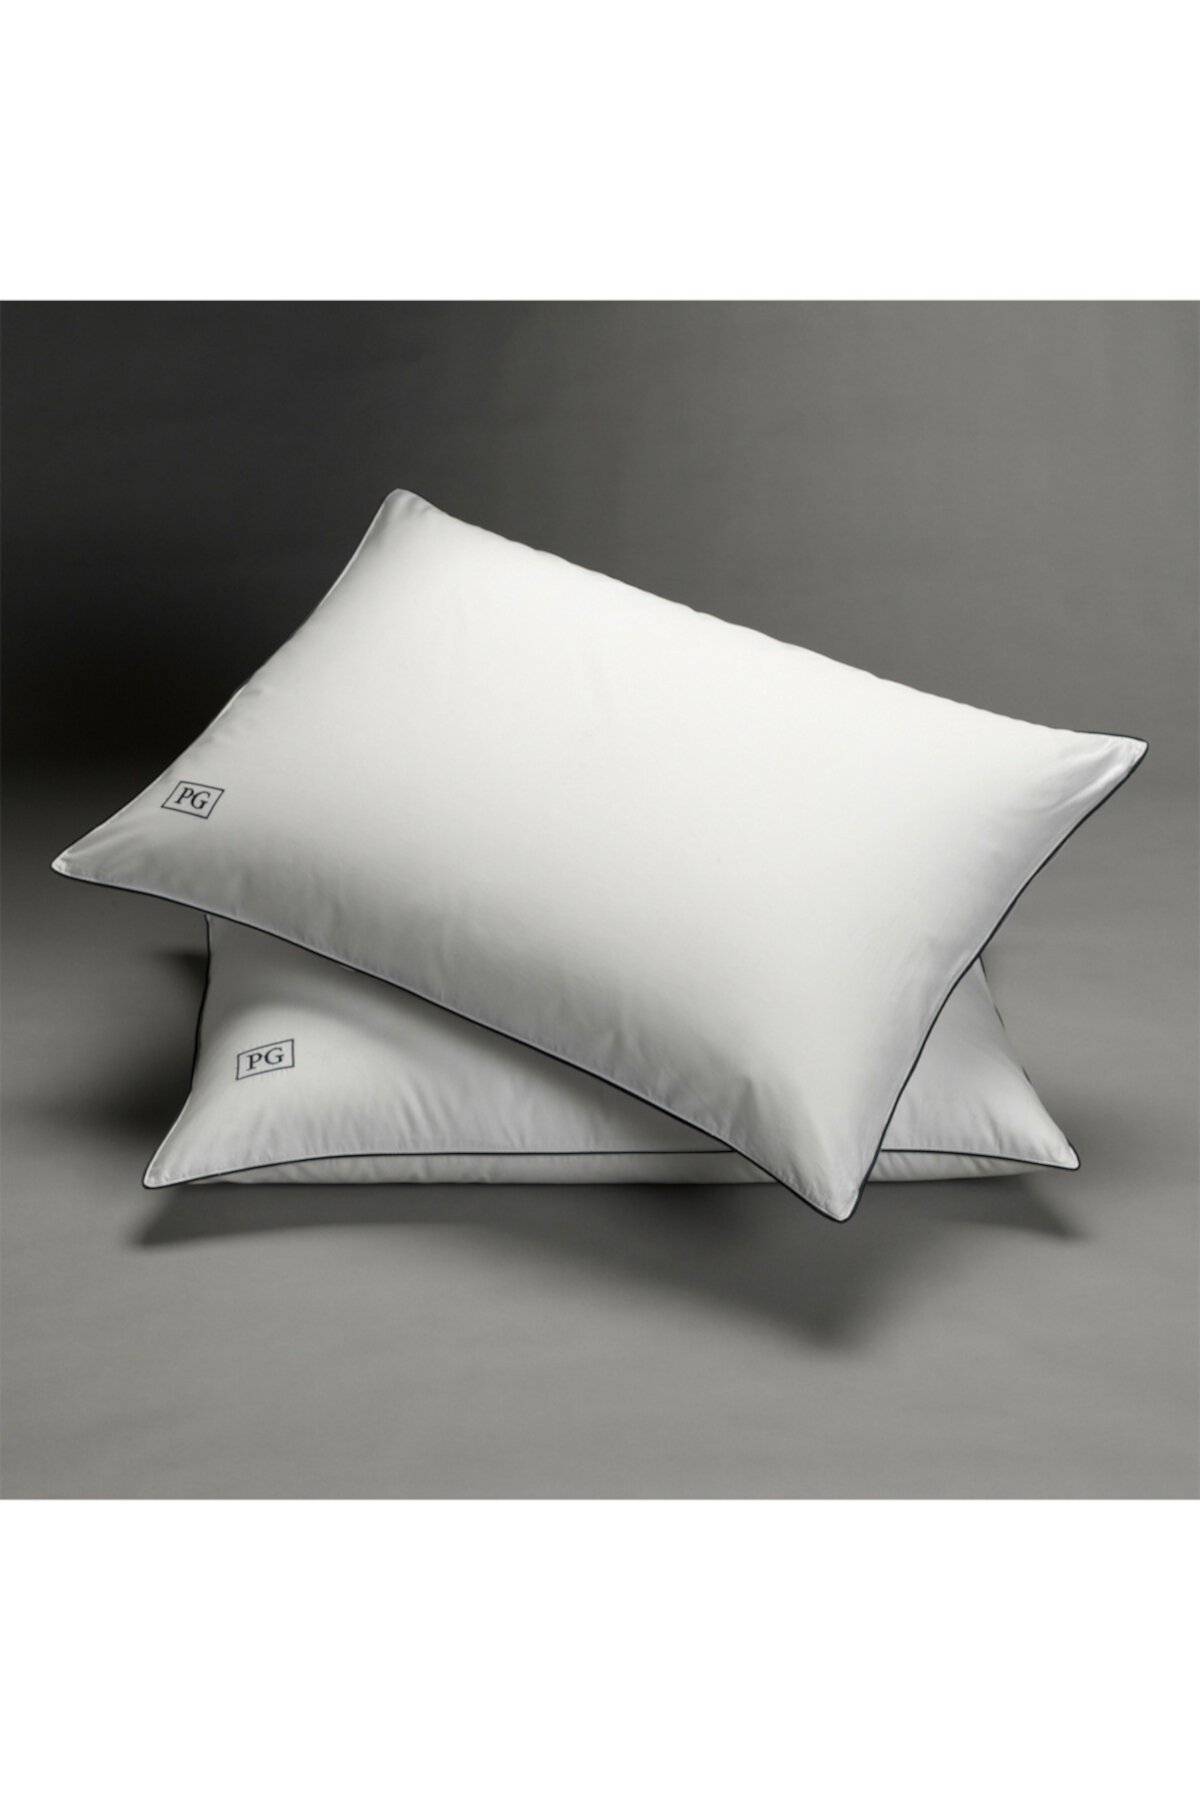 Мягкая подушка для пухового живота с белым пухом - набор из 2 - стандартный / размер Queen Pillow Guy